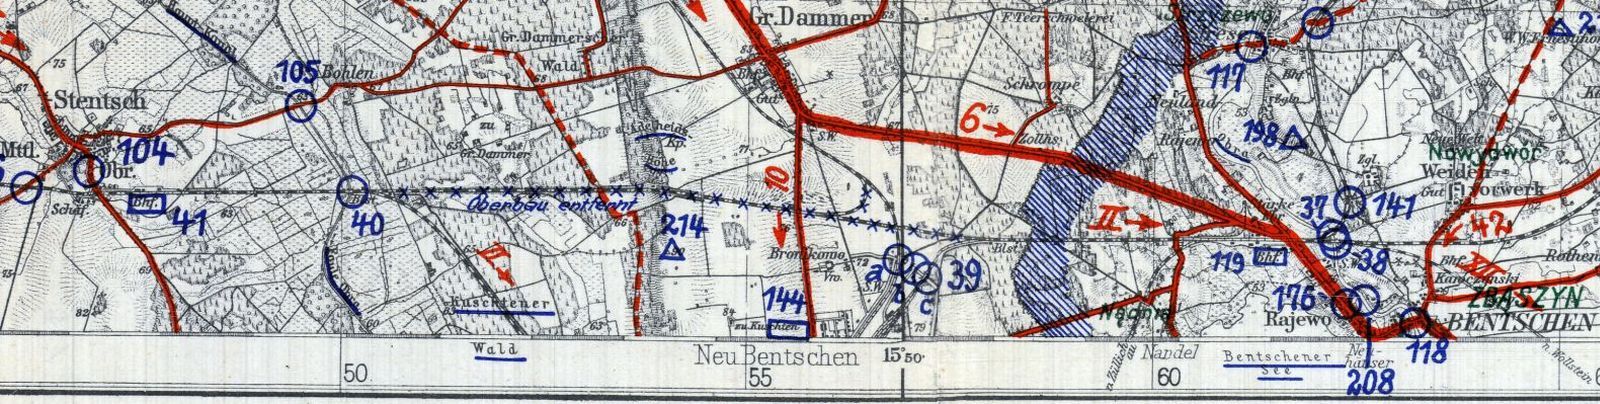 Sytuacja z 1933 roku. Zaznaczone niebieskimi "krzyżykami" odcinki torów, które w 1930 roku straciły swoją rolę i wstrzymano na nich ruch pociągów już do końca . W miejsce tego uruchomiono nowe połączenie utworzone w 1930 roku, w chwili oddania dworca osobowego w Zbąszynku 14.07.1930 r.